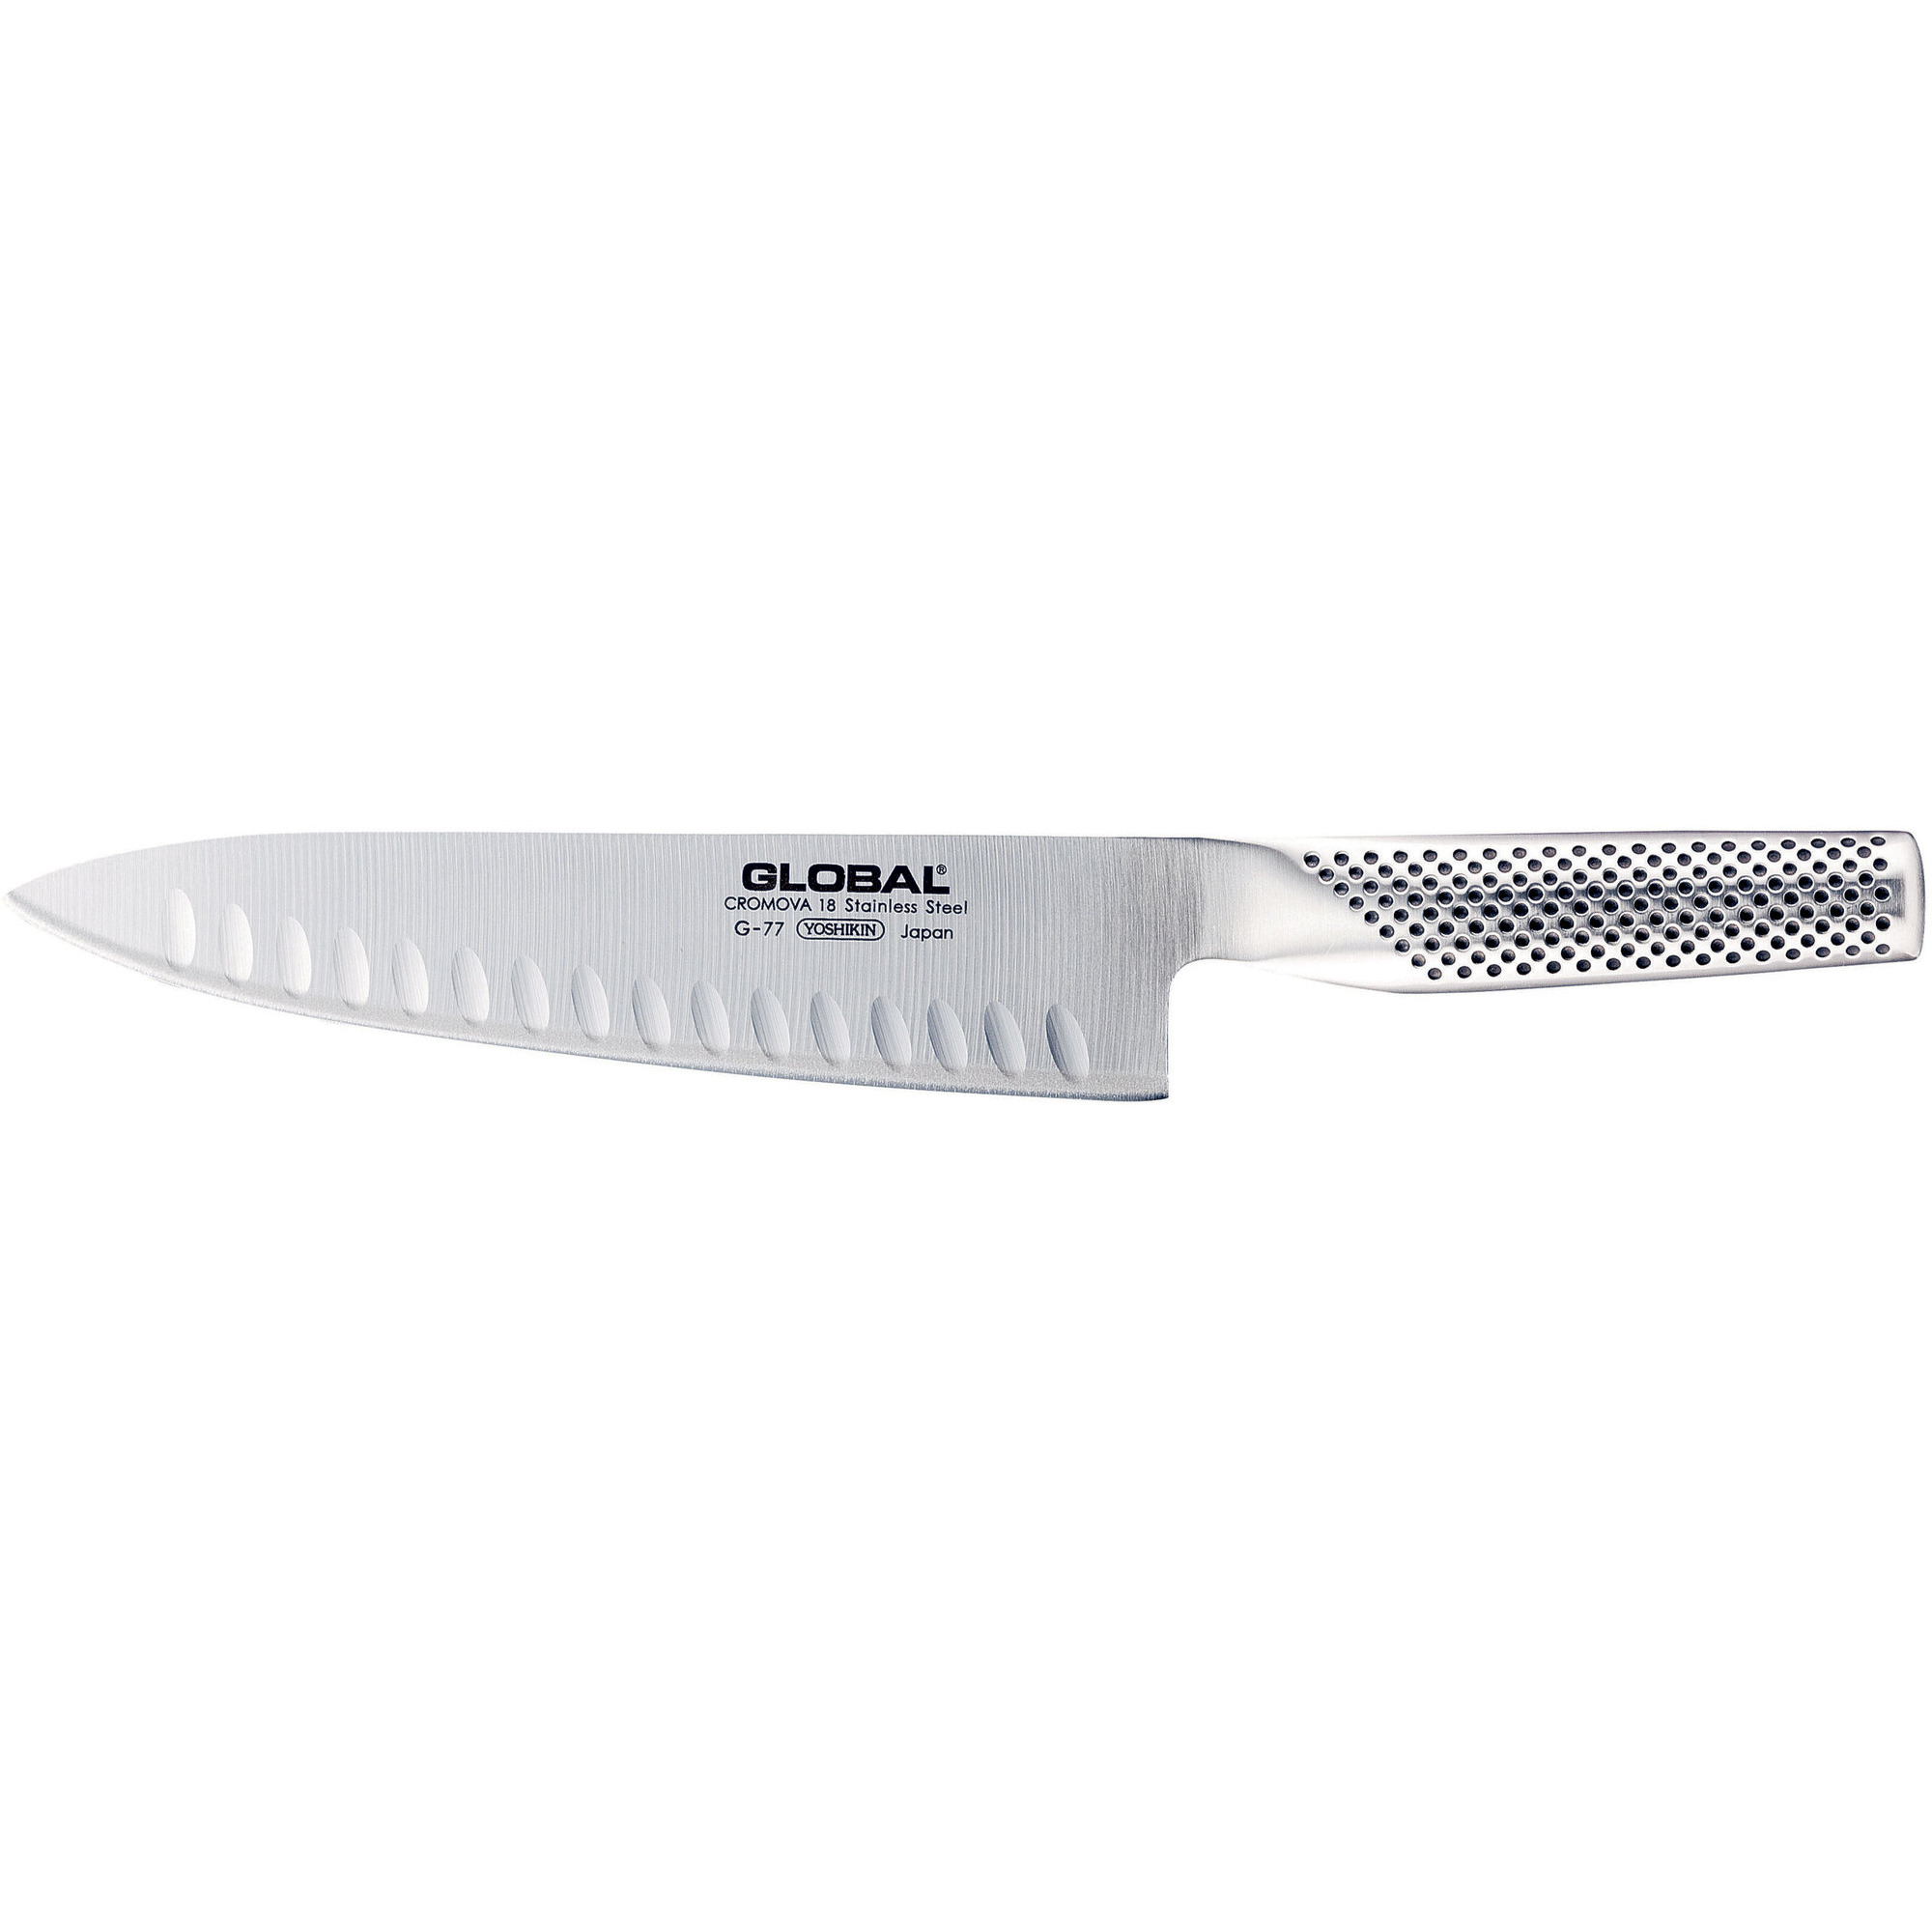 Global Kokkekniv med grantonskær